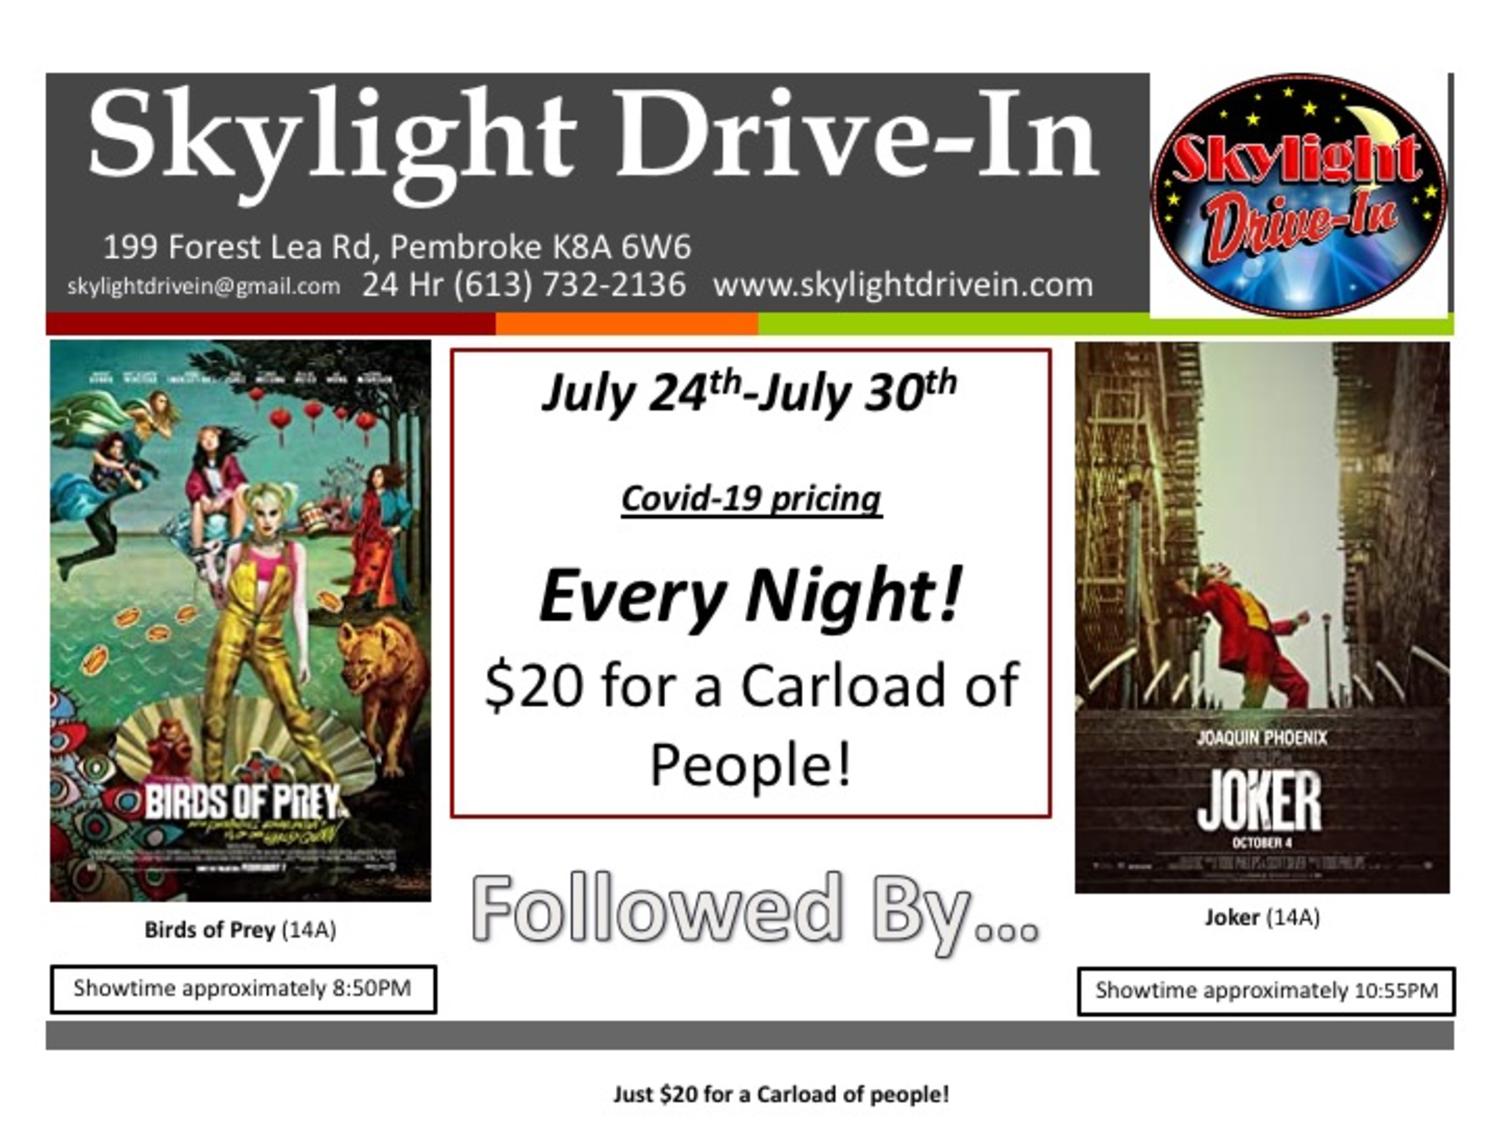 Skylight Drive-In featuring Birds of Prey followed by Joker